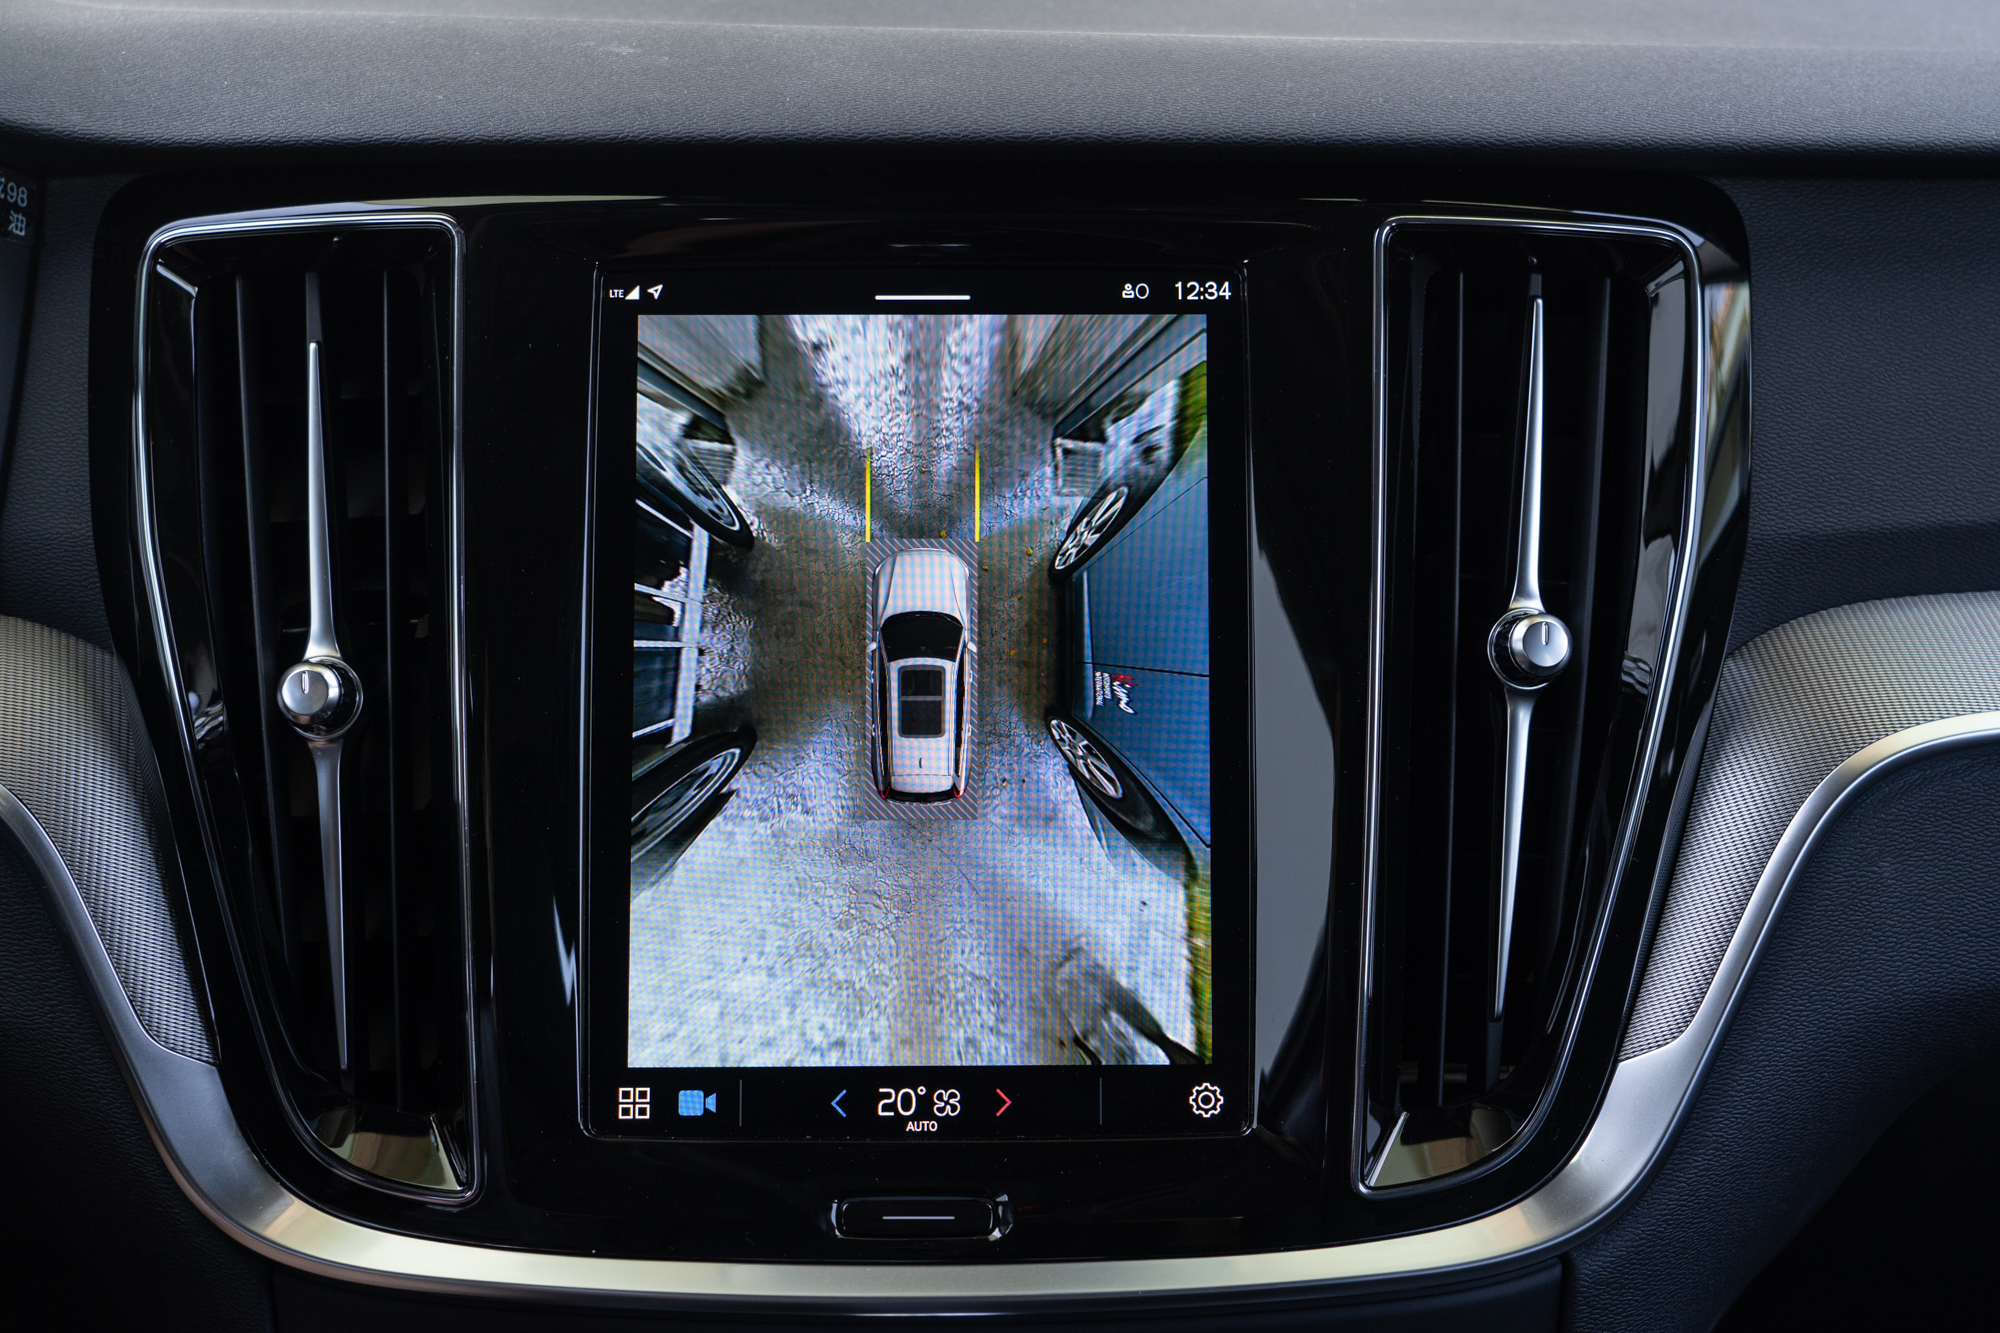 360度還車輔助攝影機附車頭180度視角輔助，可協助駕駛更輕易判斷車身周遭環境，提升用車安全。